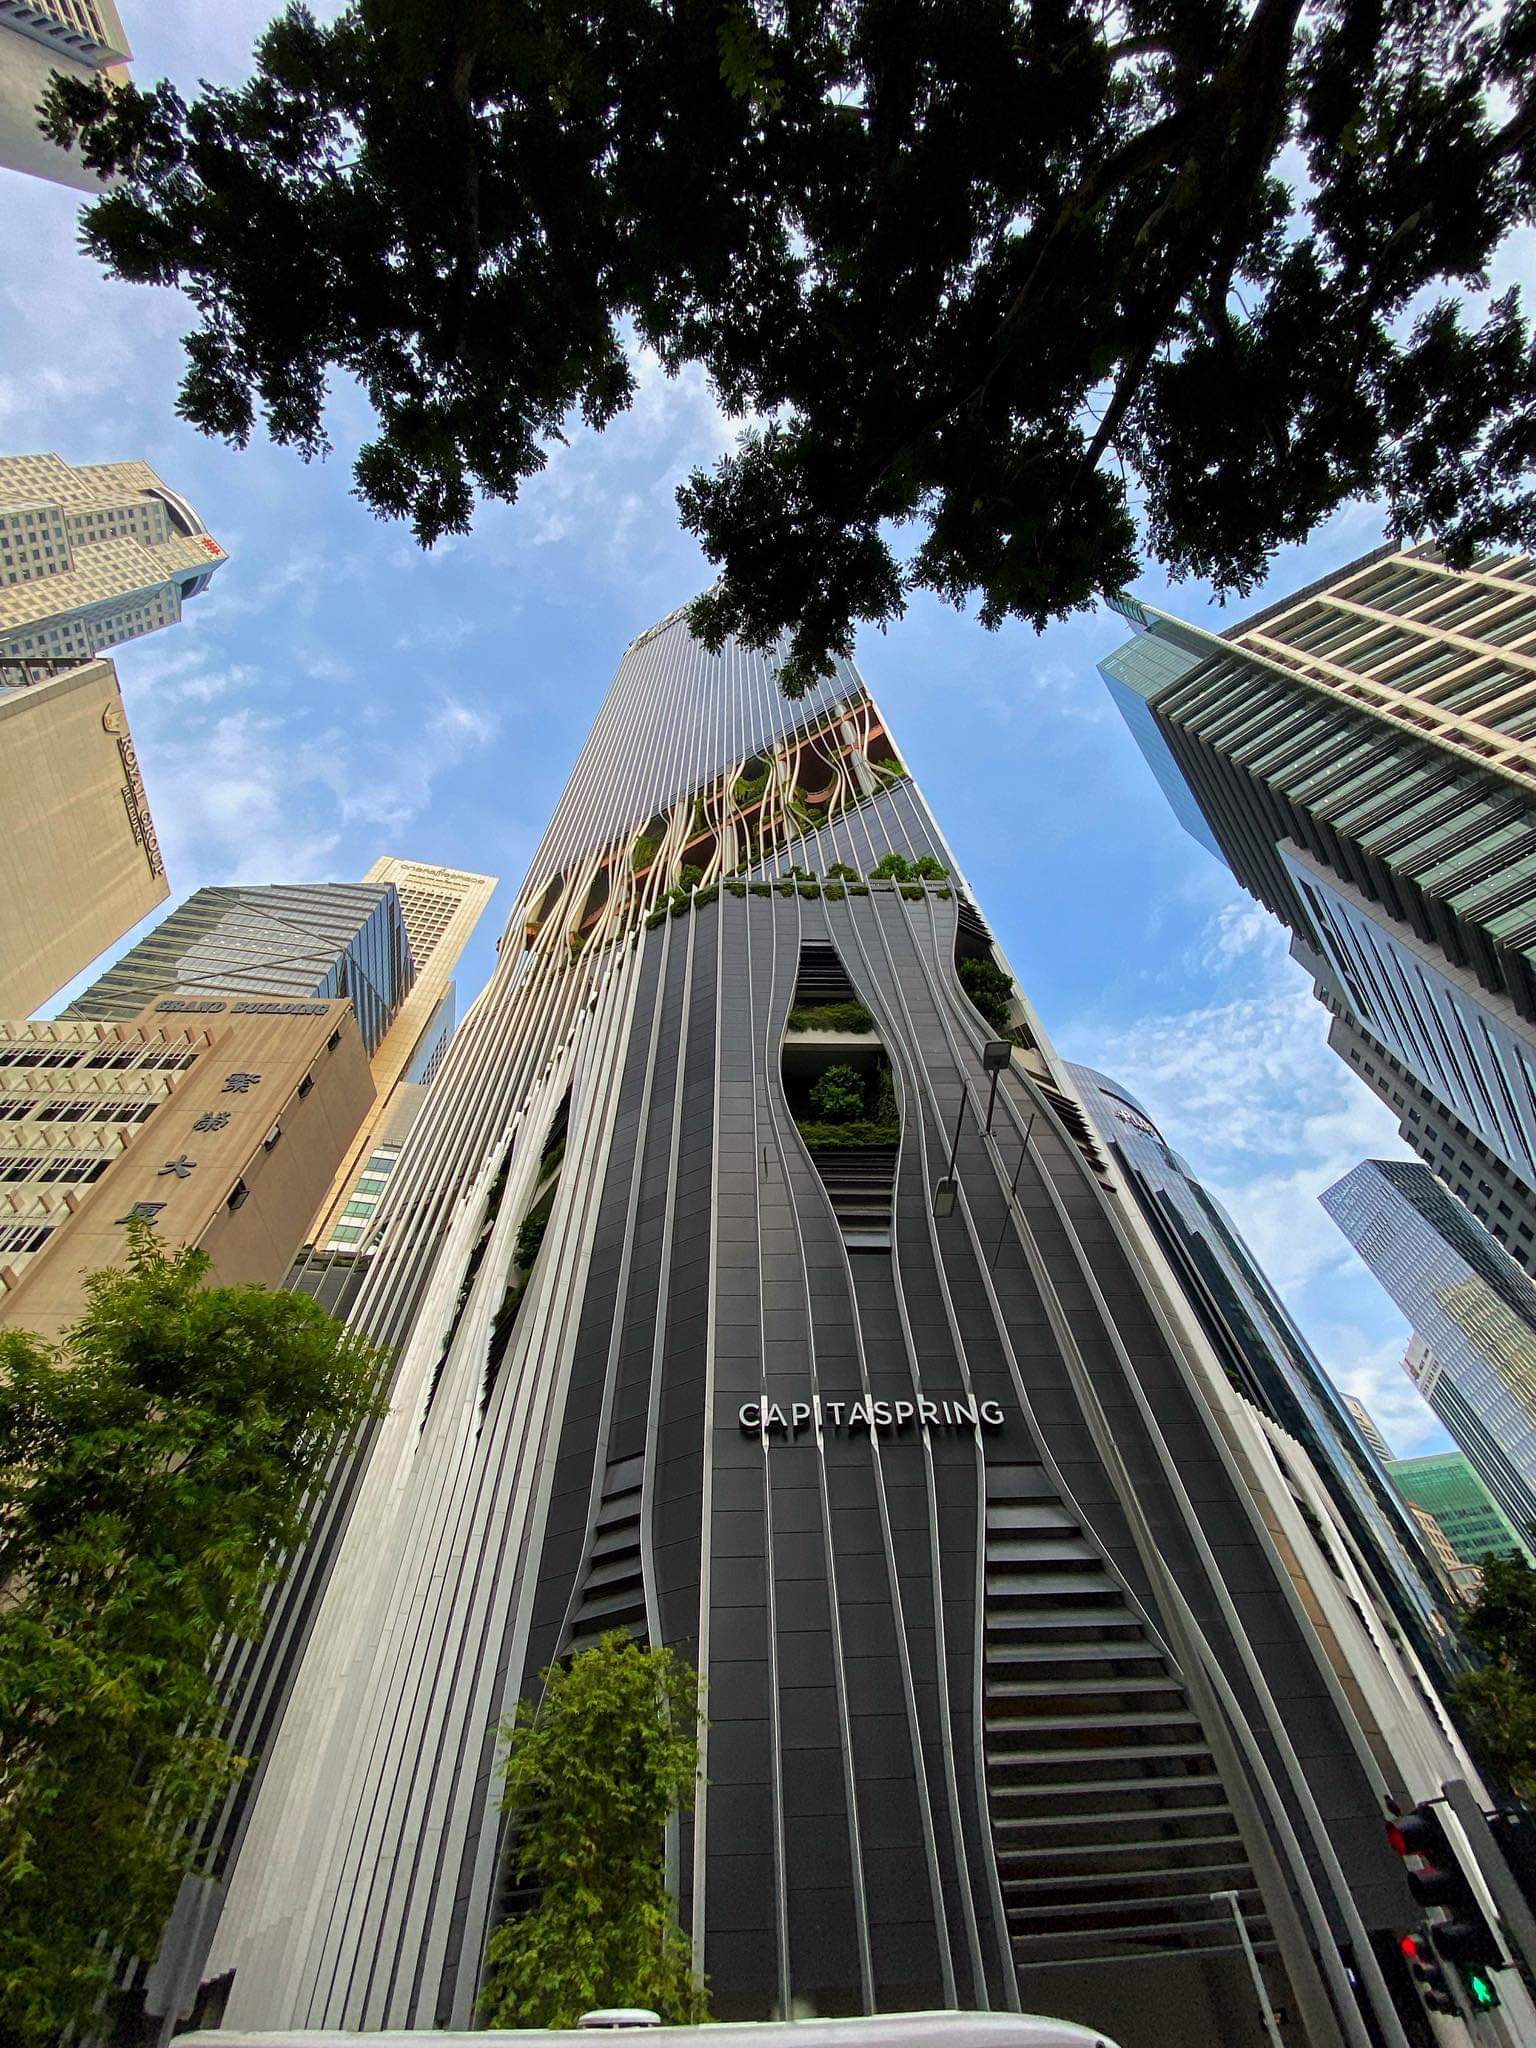 CapitaSpring: Die Skyline gestalten, Singapurs architektonische Identität definieren